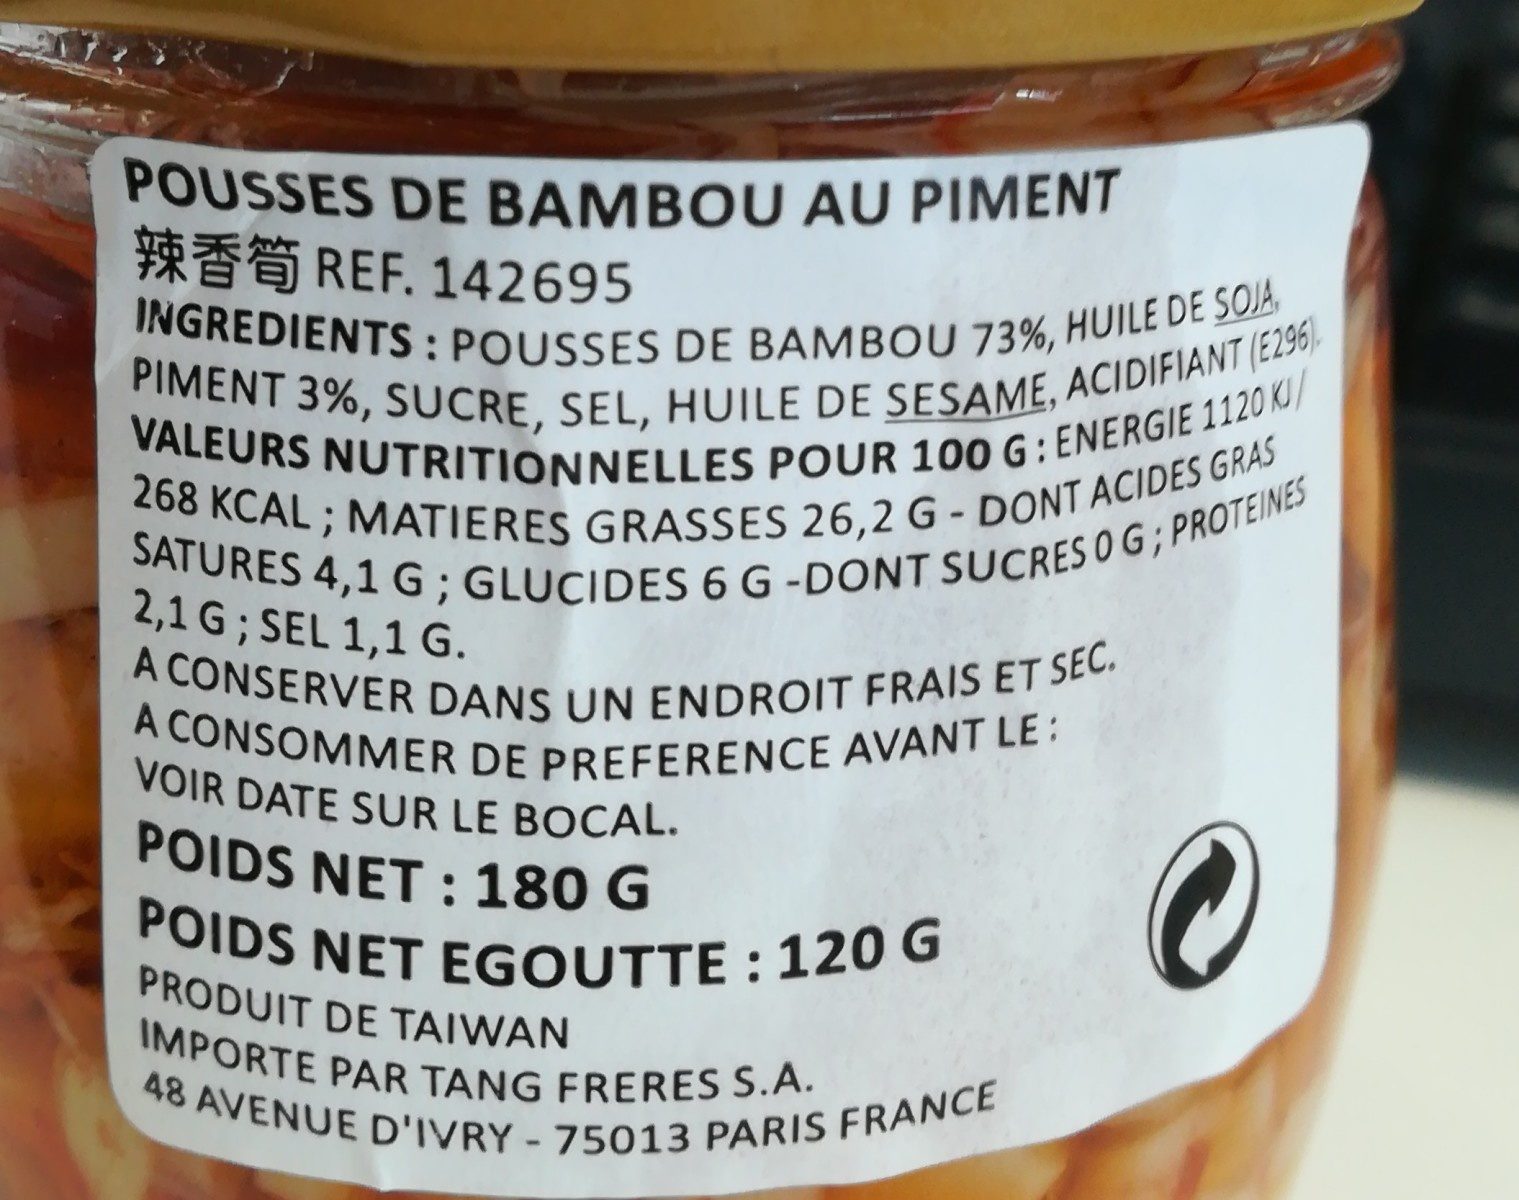 Pousse de bambou au piment - Ingredients - fr